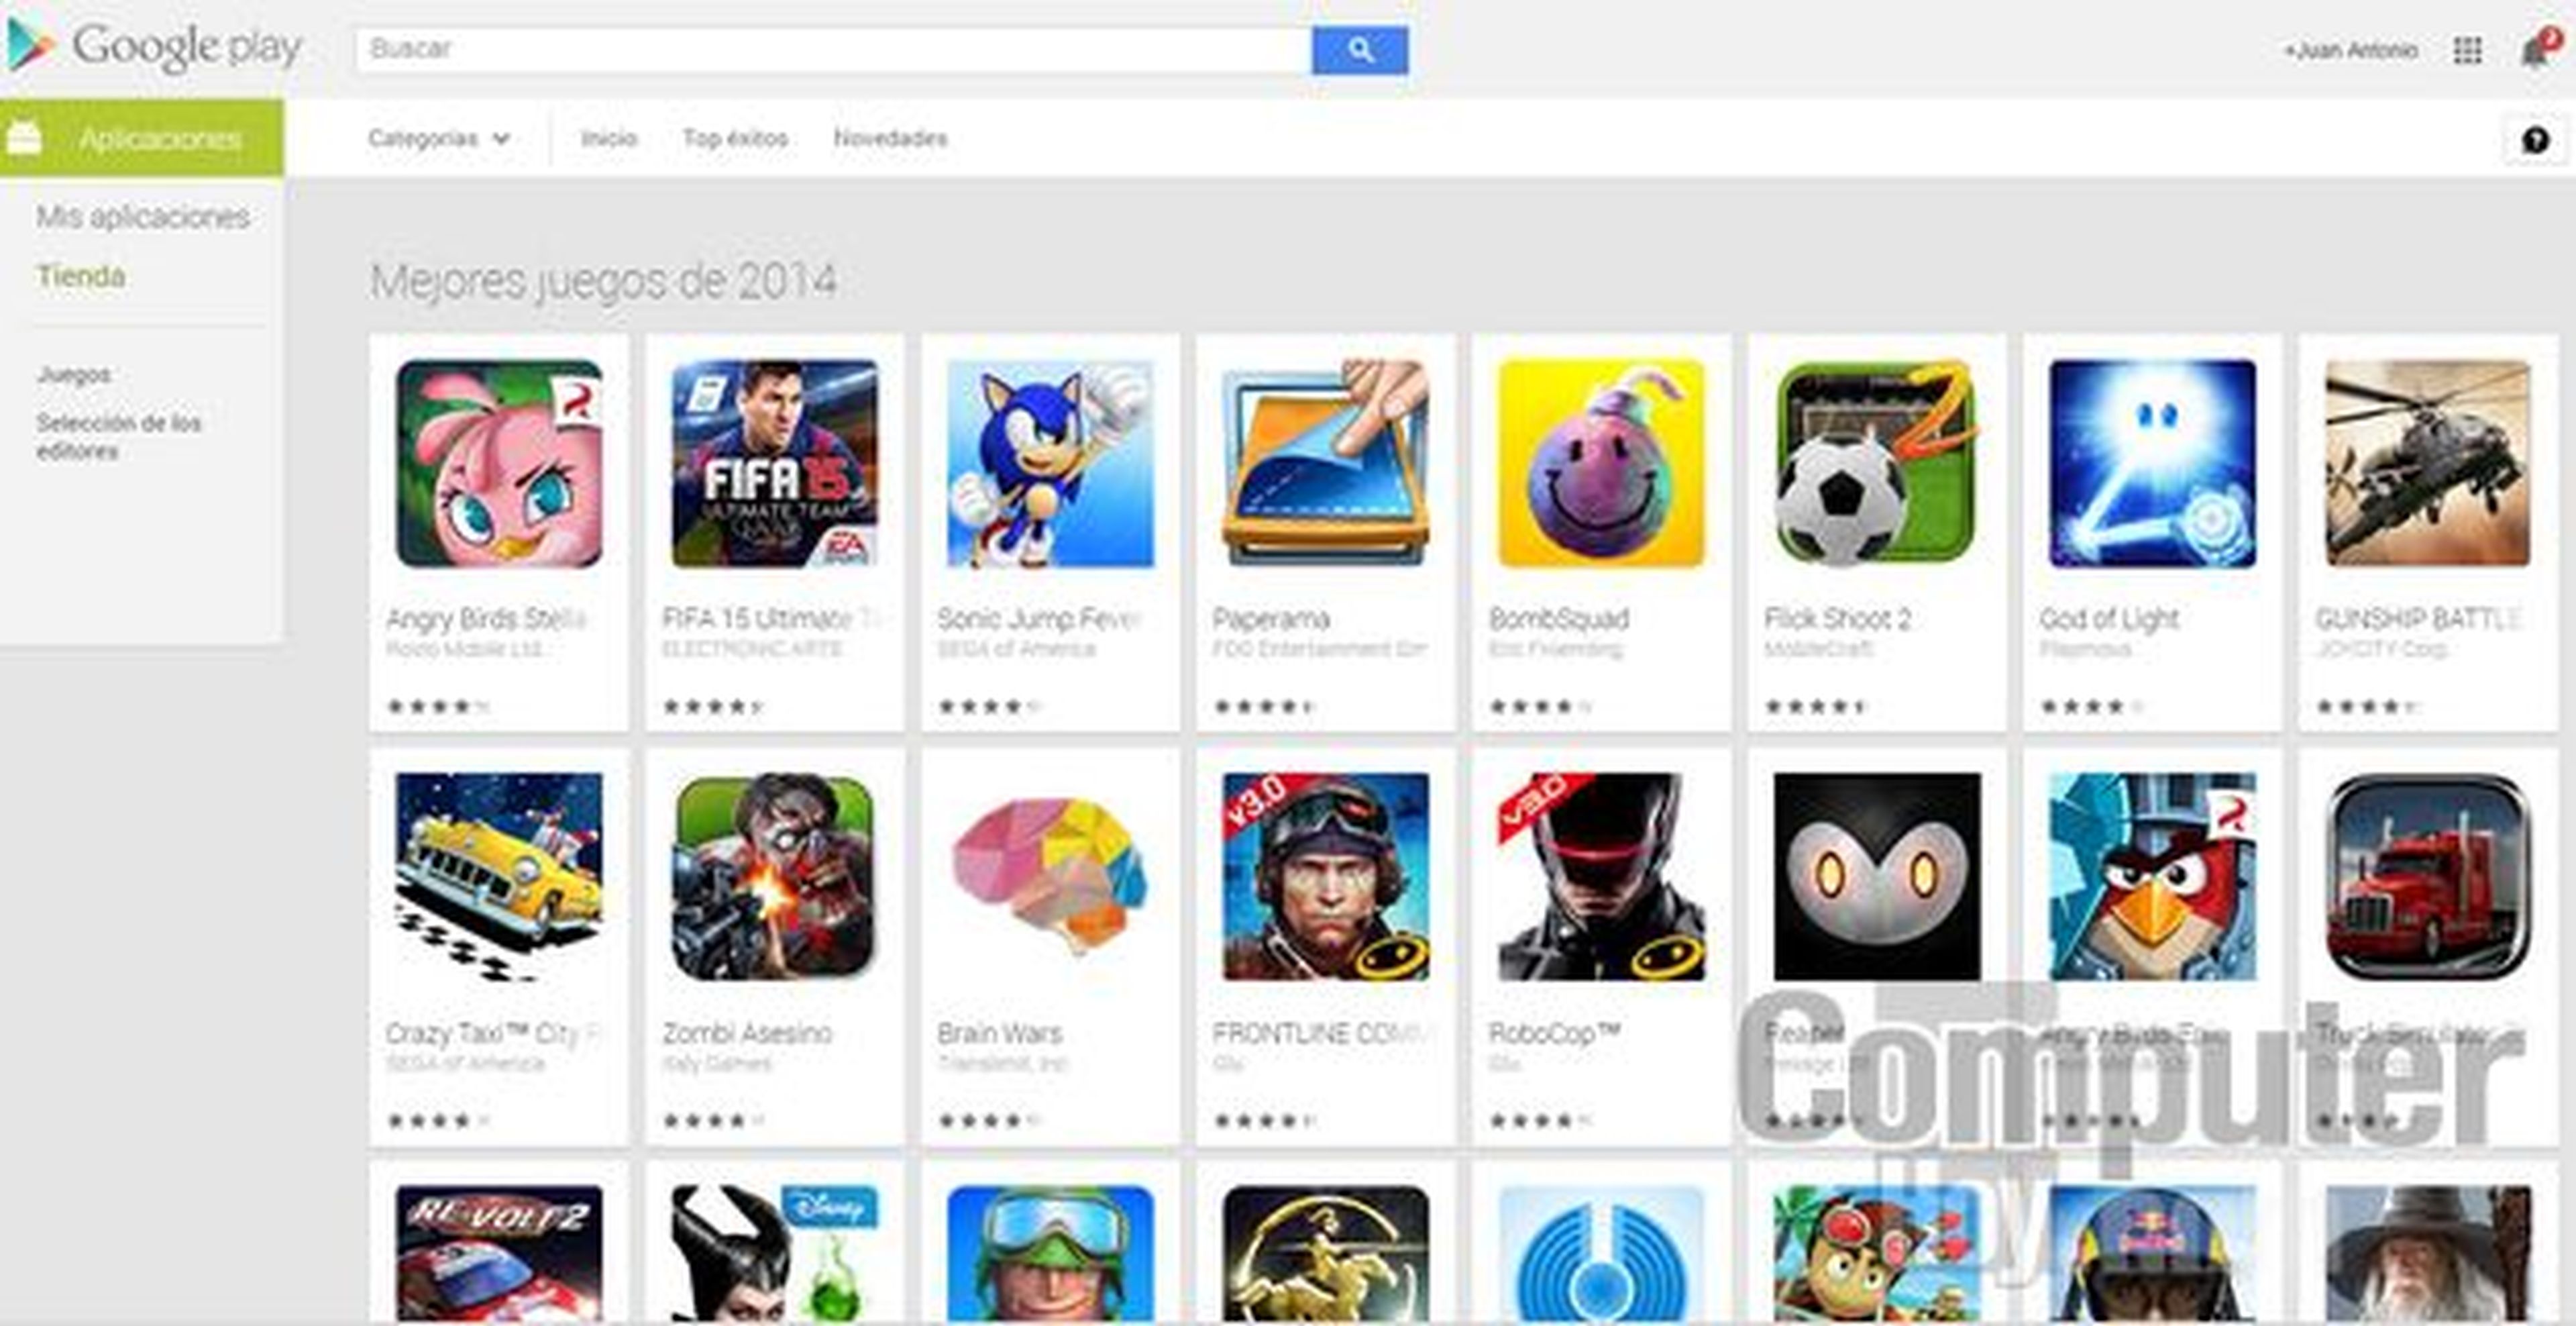 Mejores juegos de 2014 Google Play